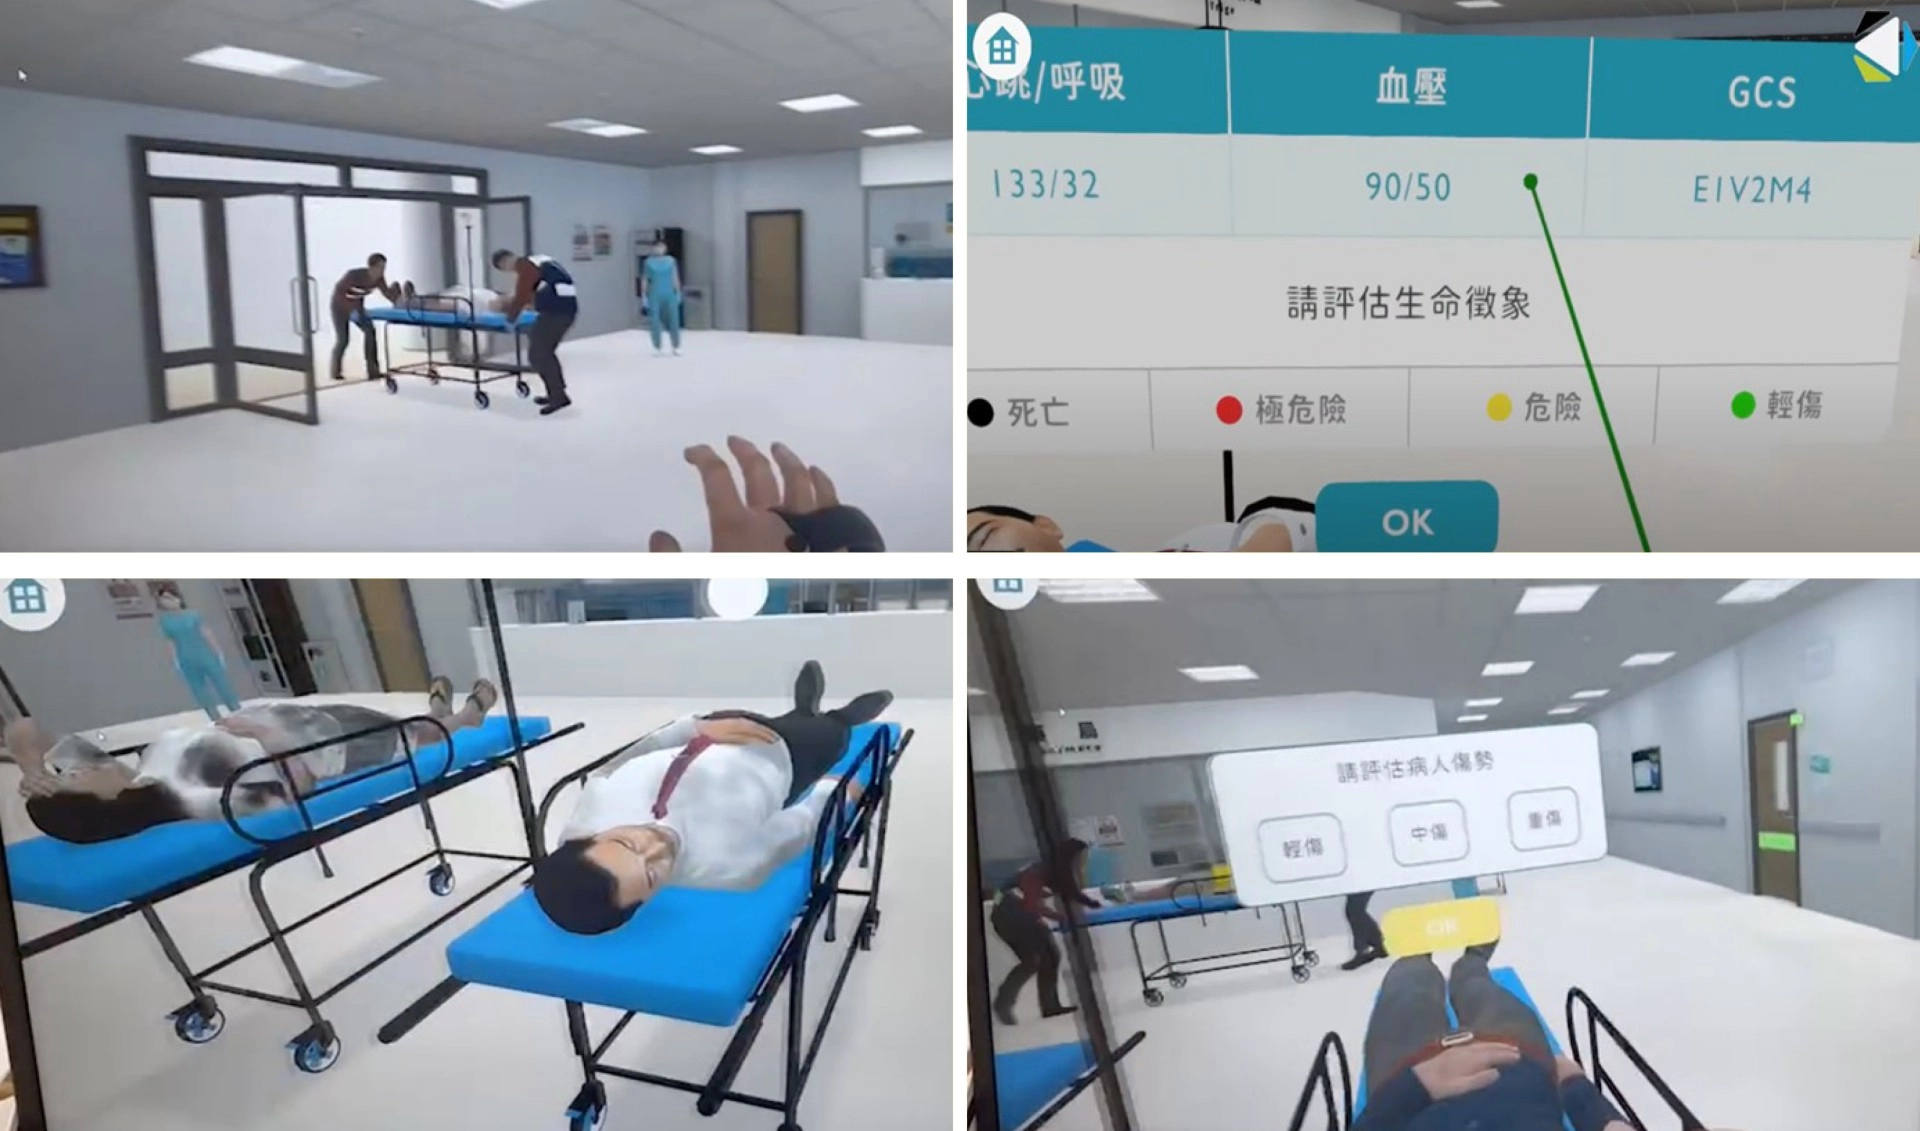 為了培育更多災難護理人才，急診醫護團隊開發災難護理訓練模組，透過VR虛擬實境體驗，讓學員可以從中學習到正確的檢傷評估流程。